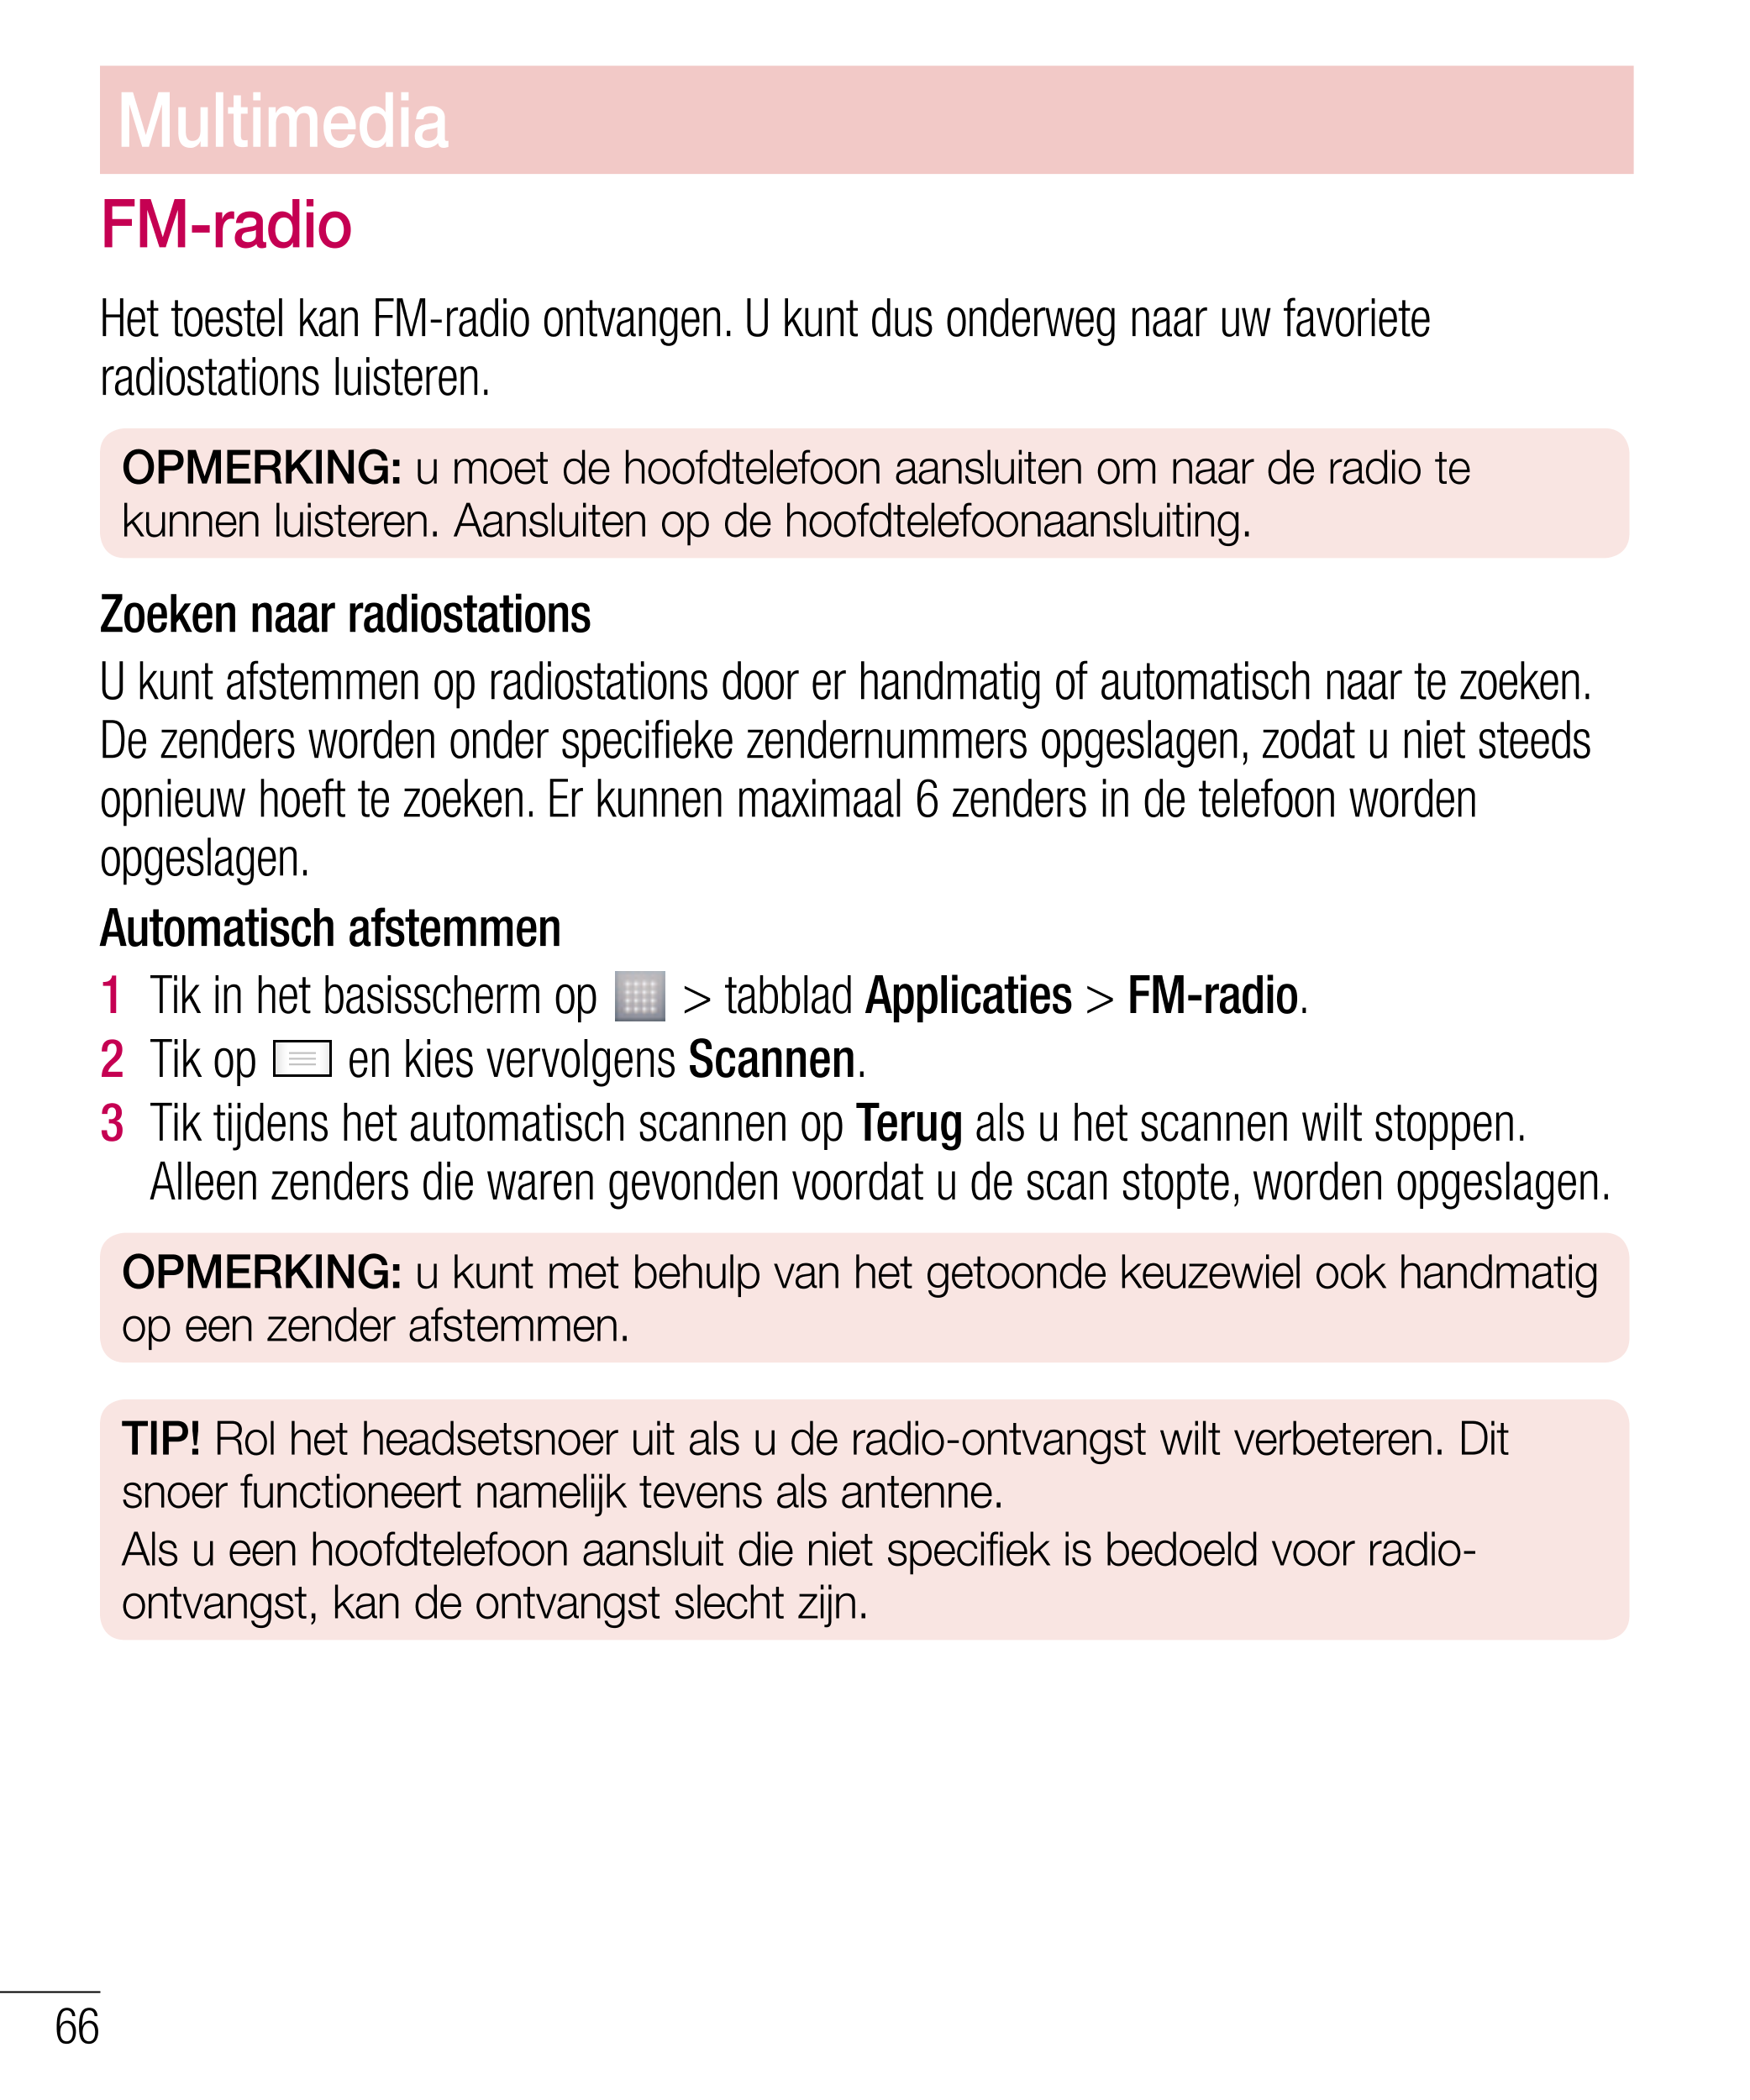 Multimedia
FM-radio
Het toestel kan FM-radio ontvangen. U kunt dus onderweg naar uw favoriete 
radiostations luisteren.
OPMERKIN